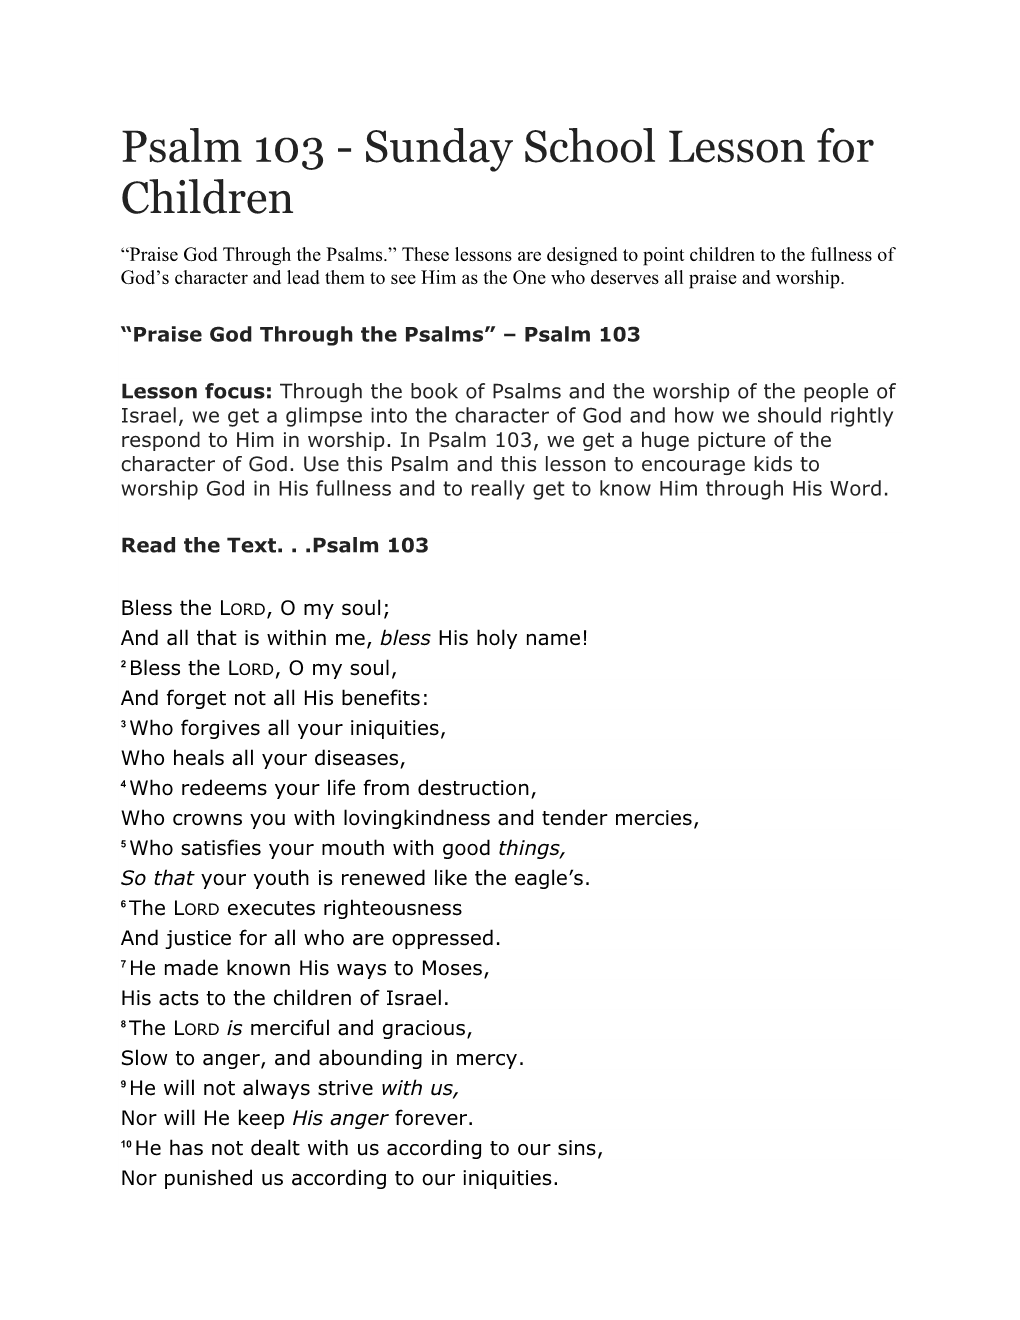 Psalm 103 - Sunday School Lesson for Children